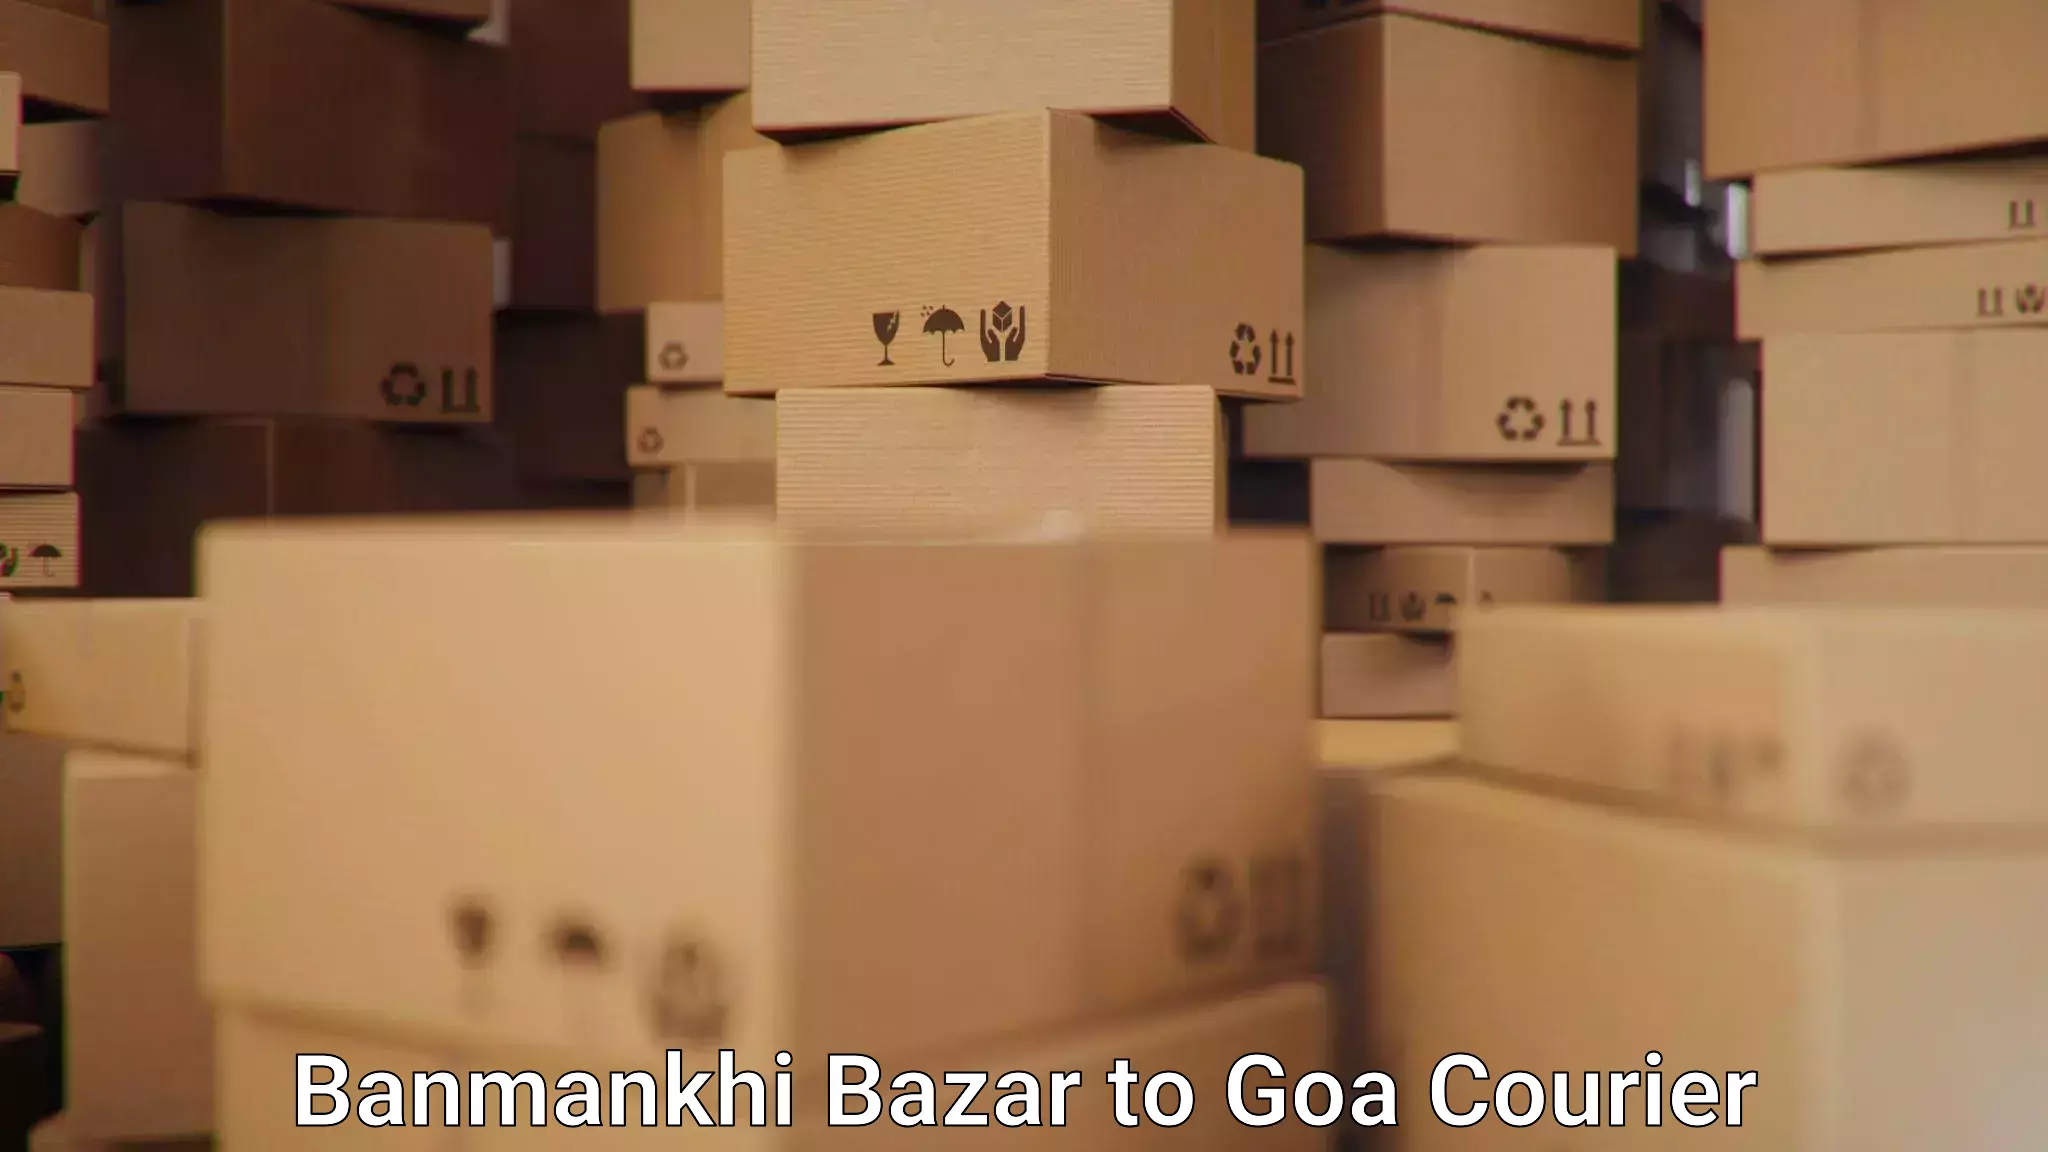 Easy access courier services Banmankhi Bazar to Panaji